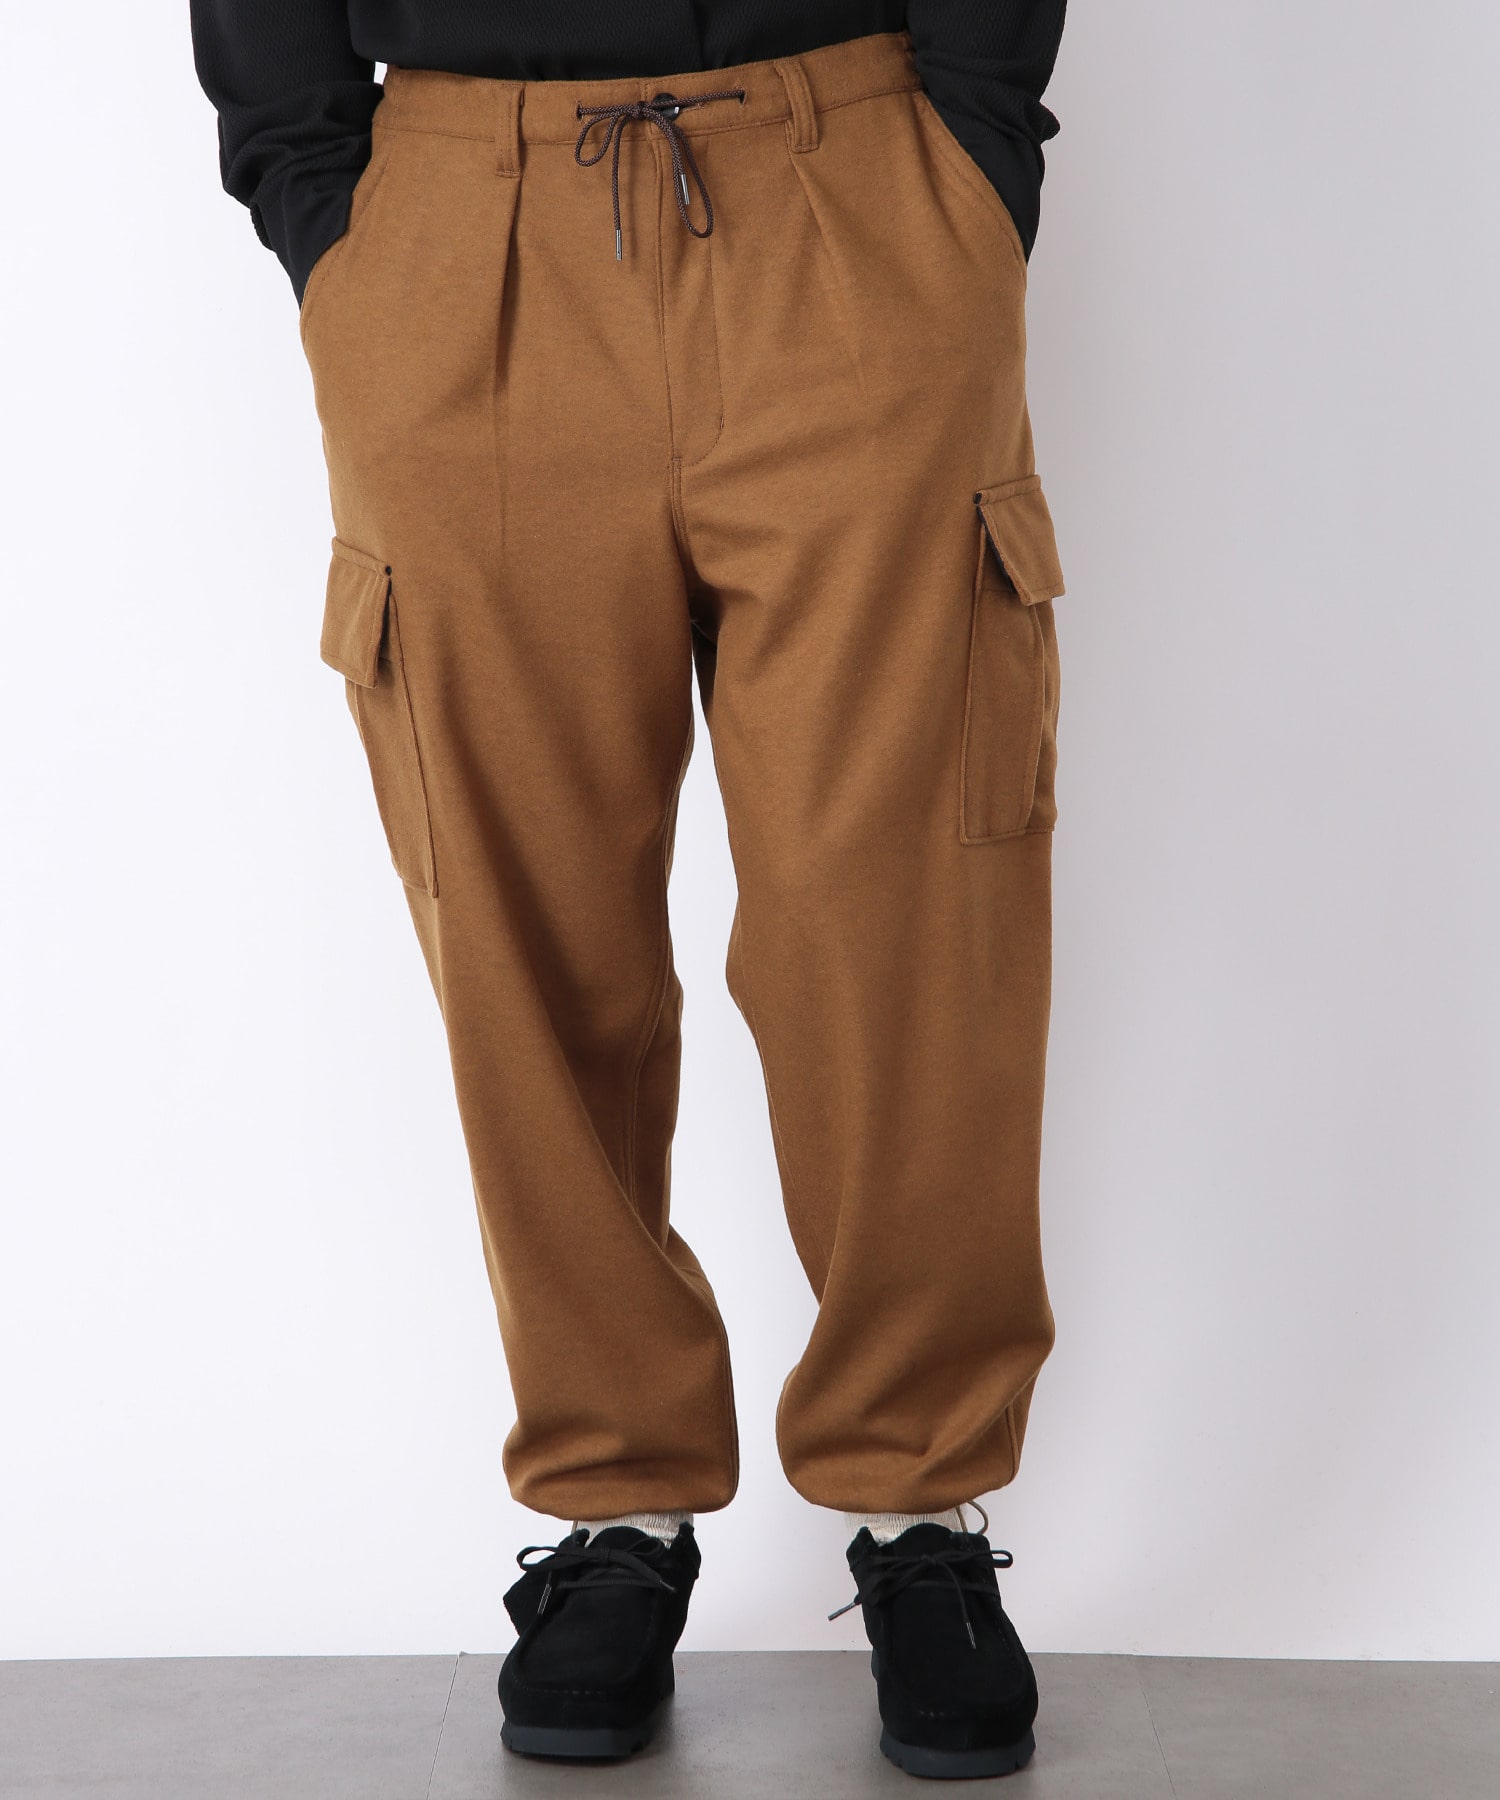 ジャージ素材カーゴパンツ メンズファッション通販 Men S Bigi Online Store メンズビギ オンラインストア